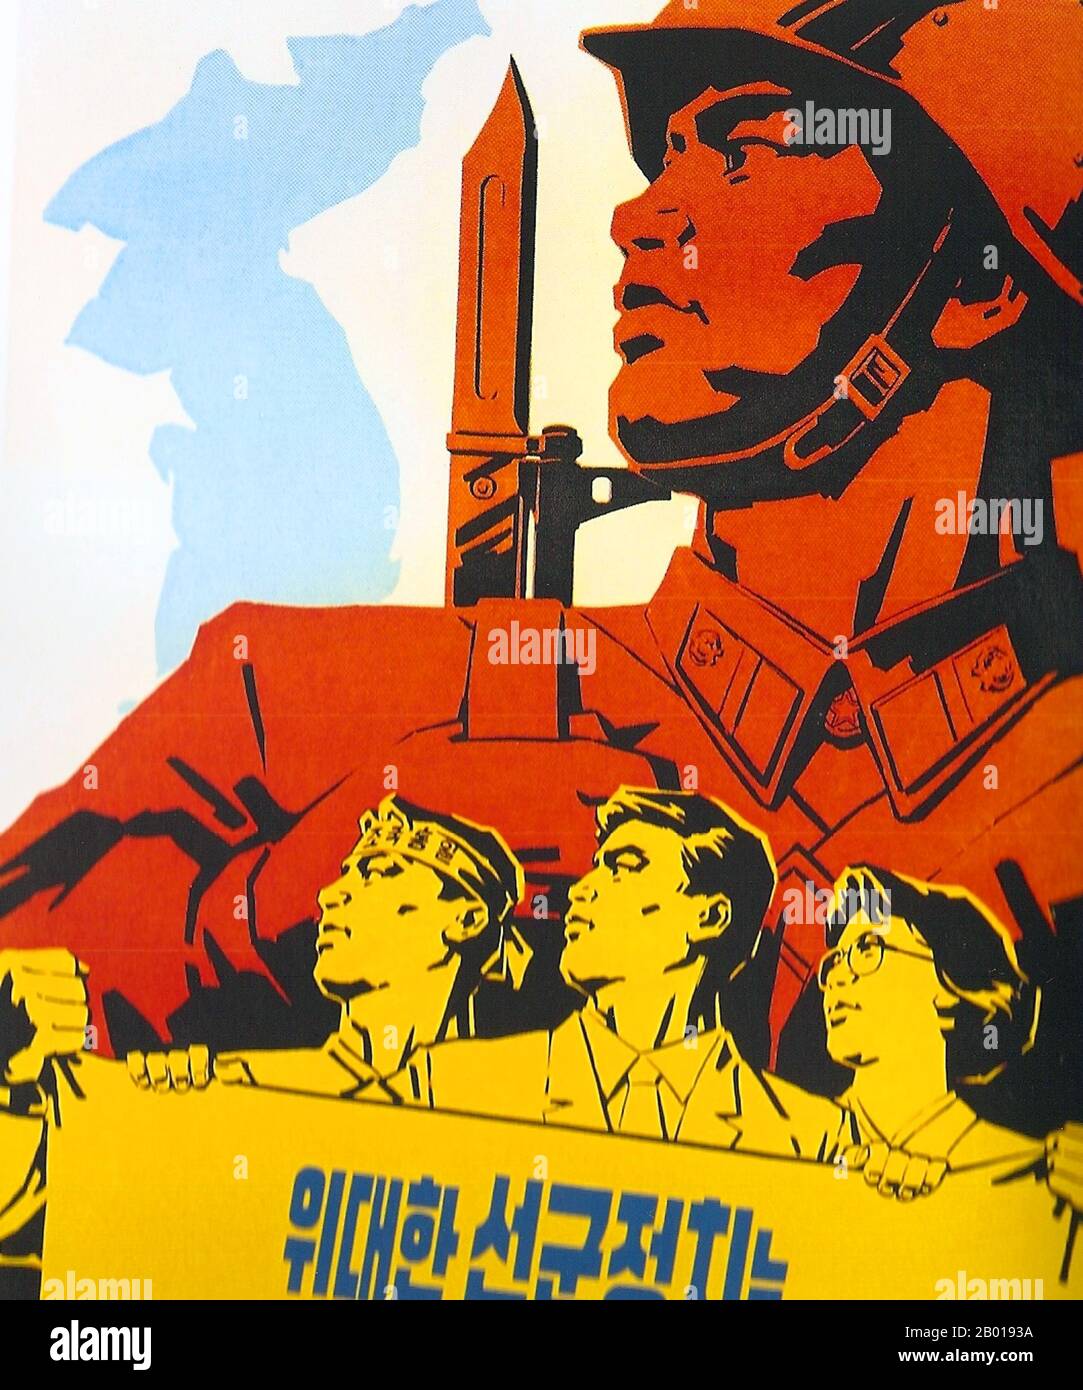 Korea: Nordkoreanisches (DVRK) Propagandaplakat, das die nordkoreanischen Streitkräfte verherrlicht, c. 1950s. Sozialistischer Realismus ist ein Stil realistischer Kunst, der sich unter dem Sozialismus in der Sowjetunion entwickelte und in anderen kommunistischen Ländern zu einem dominanten Stil wurde. Der sozialistische Realismus ist ein teleologisch orientierter Stil, der die Förderung der Ziele des Sozialismus und Kommunismus zum Ziel hat. Obwohl verwandt, sollte sie nicht mit dem sozialen Realismus verwechselt werden, einer Art Kunst, die Themen sozialer Belang realistisch darstellt. Der sozialistische Realismus verherrlicht im Allgemeinen die Ideologie des kommunistischen Staates. Stockfoto